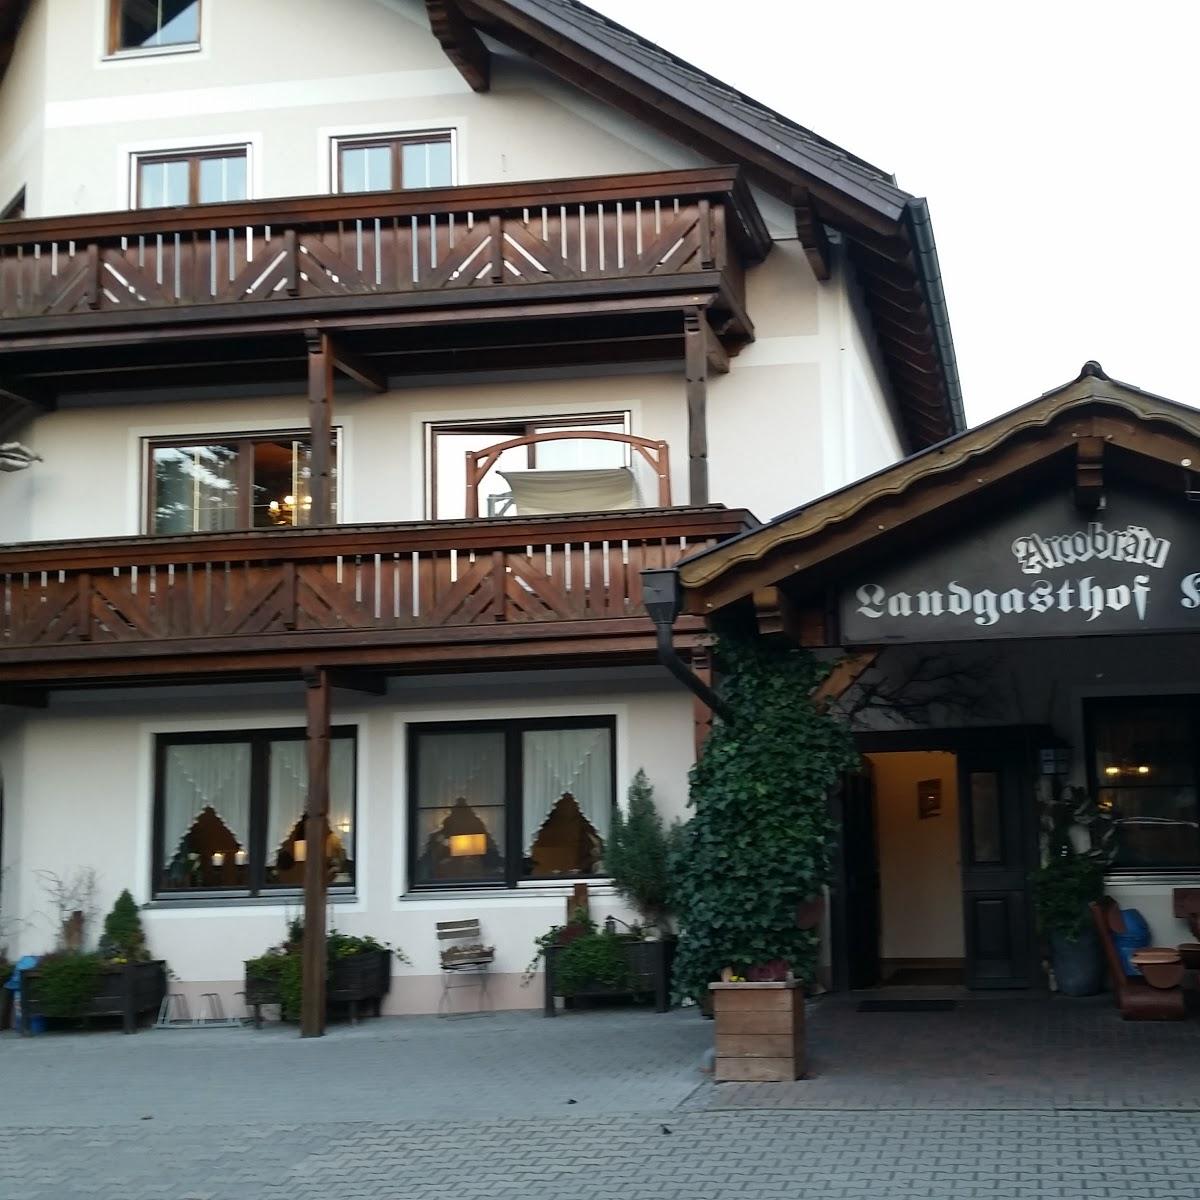 Restaurant "Landgasthof Koller" in  Schwandorf